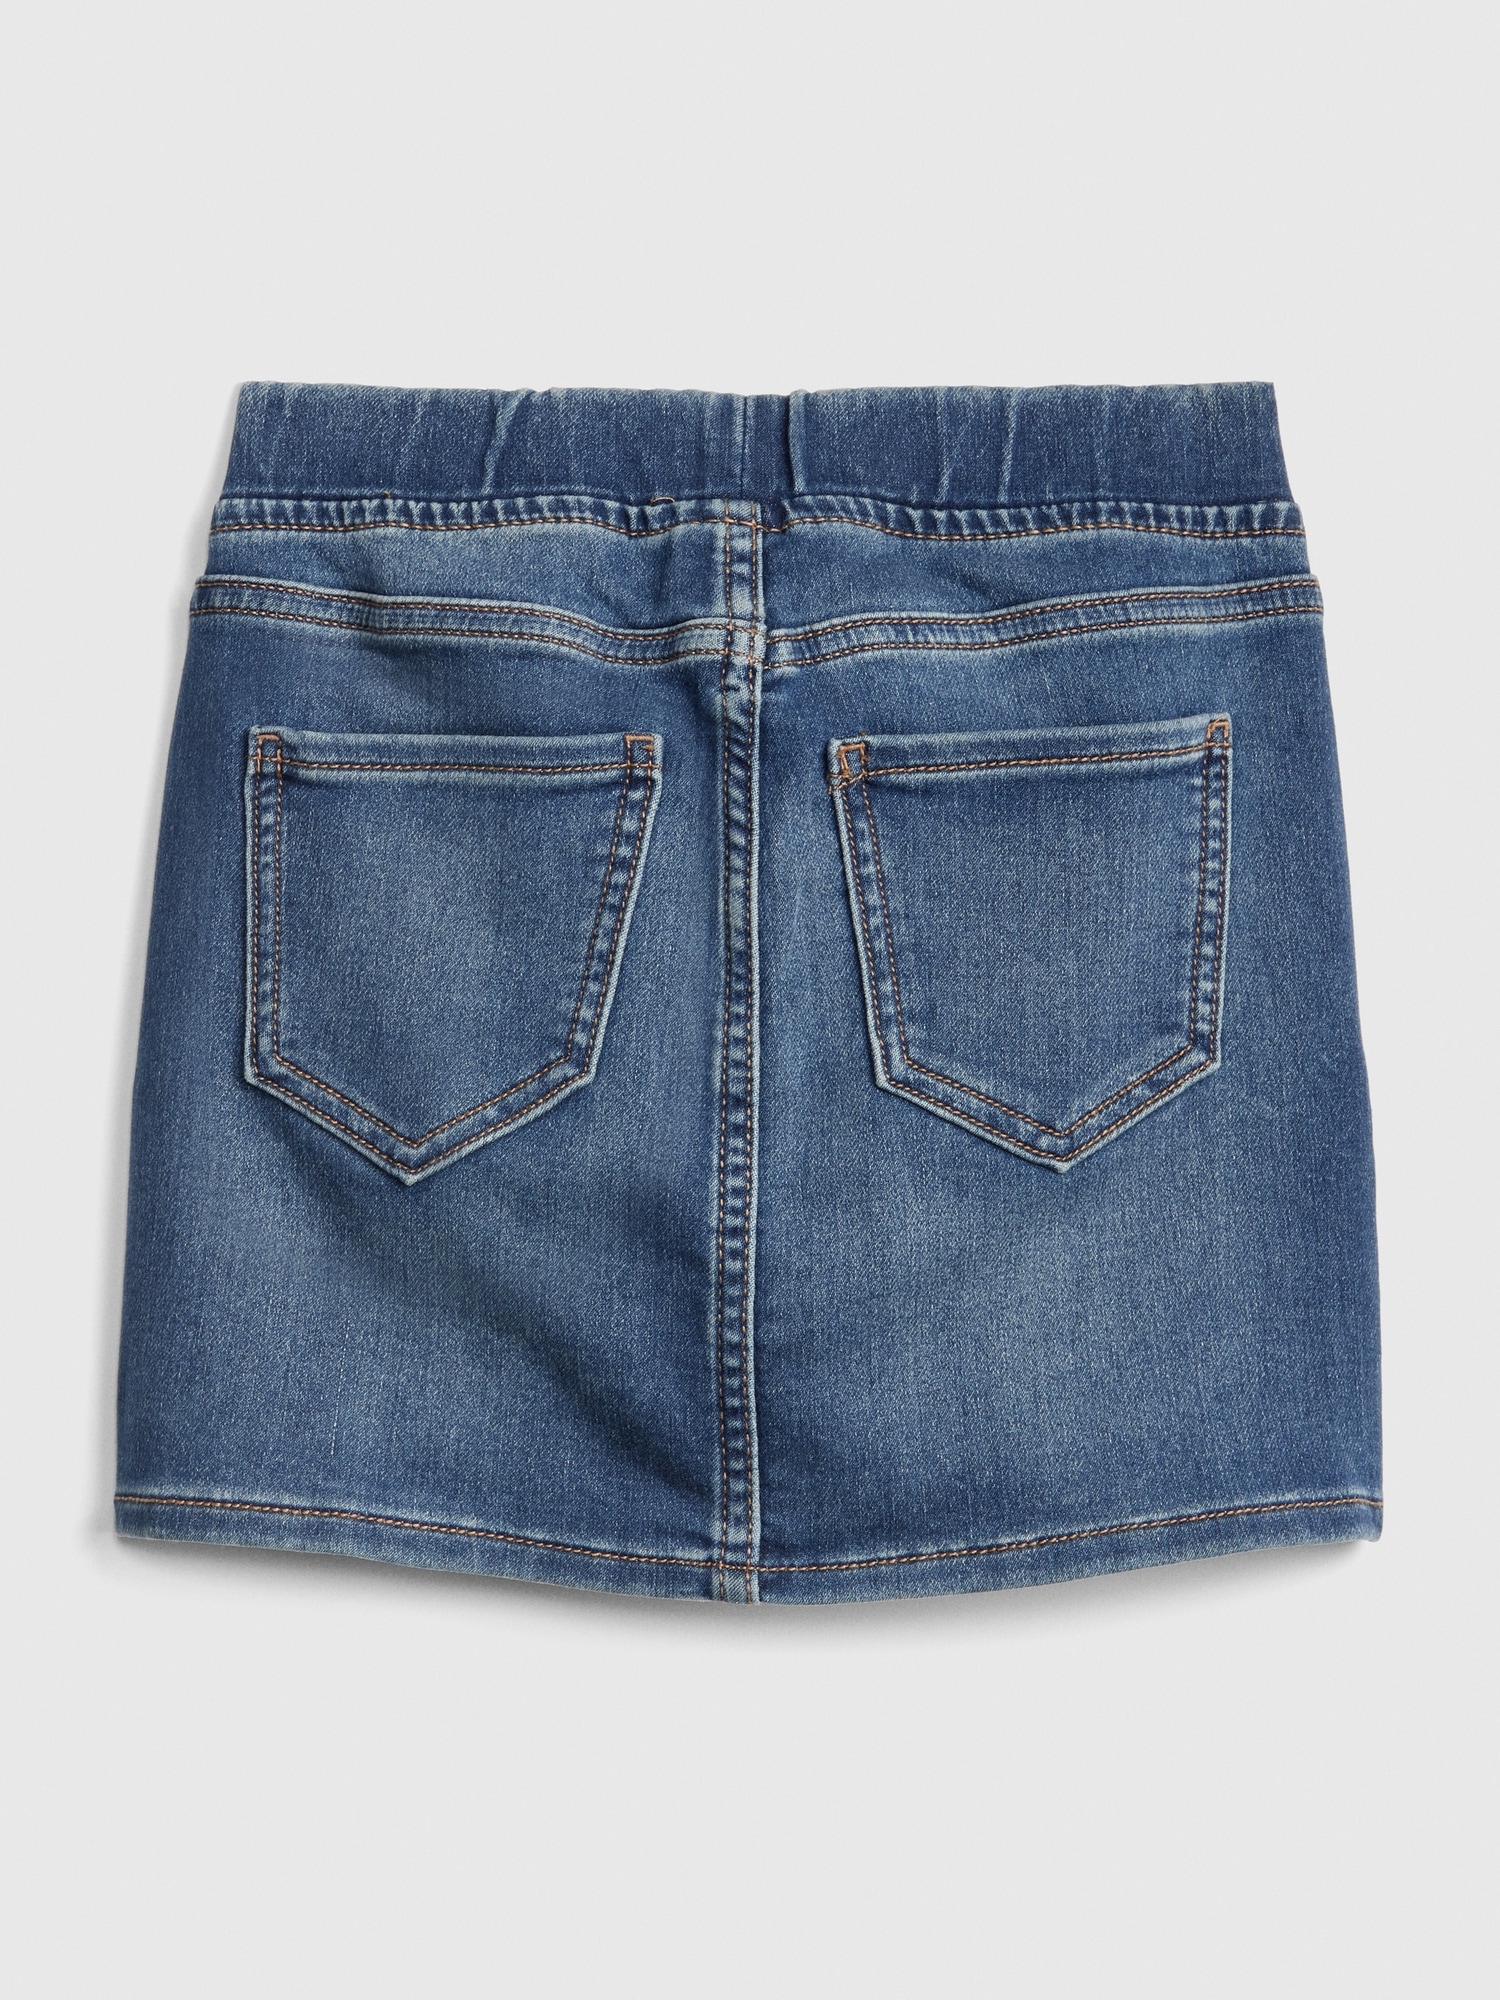 Kids Denim Pull-On Skirt | Gap